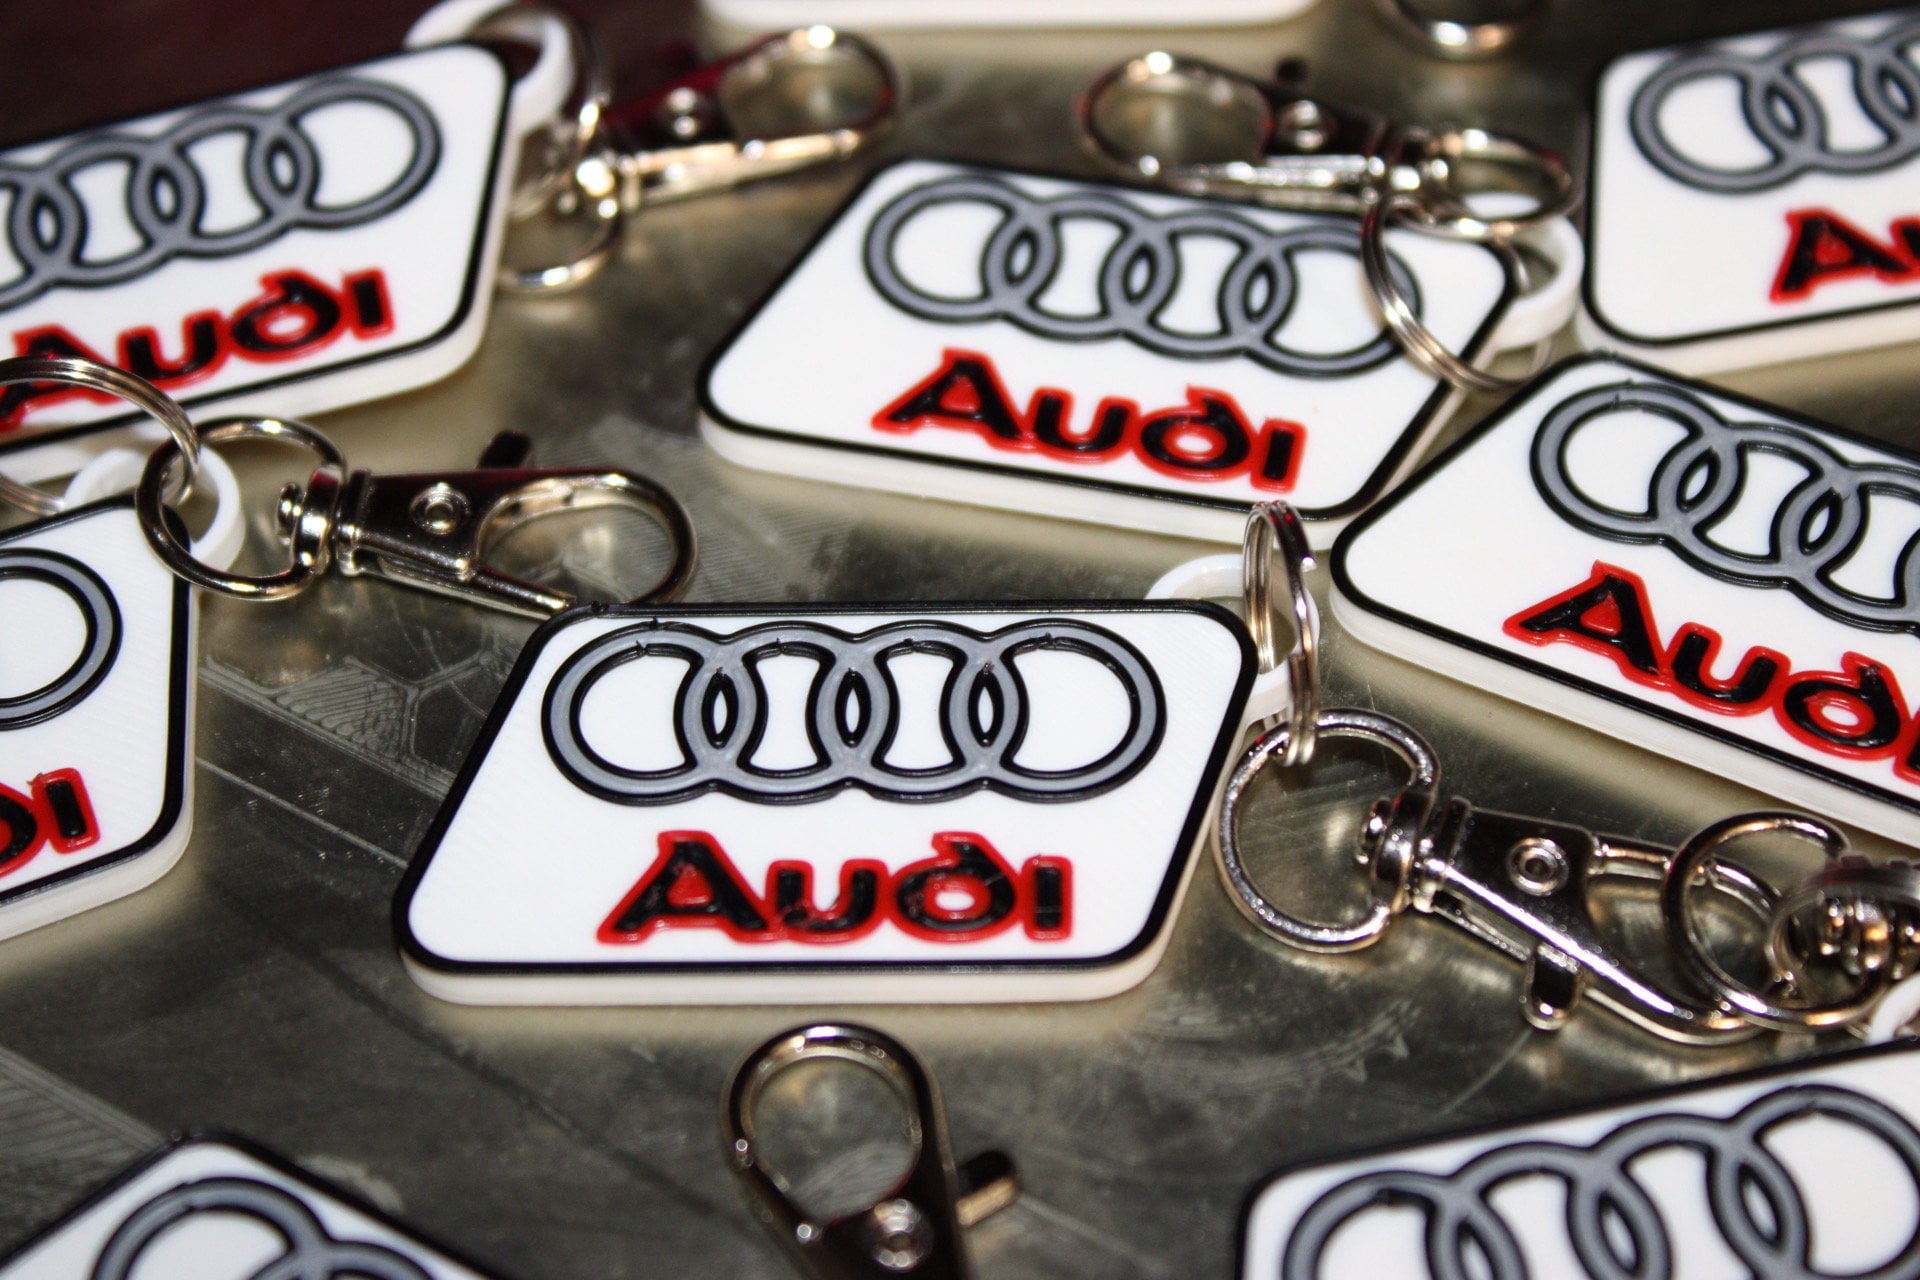 Audi Keyring - The Original Cha-Chá Shop